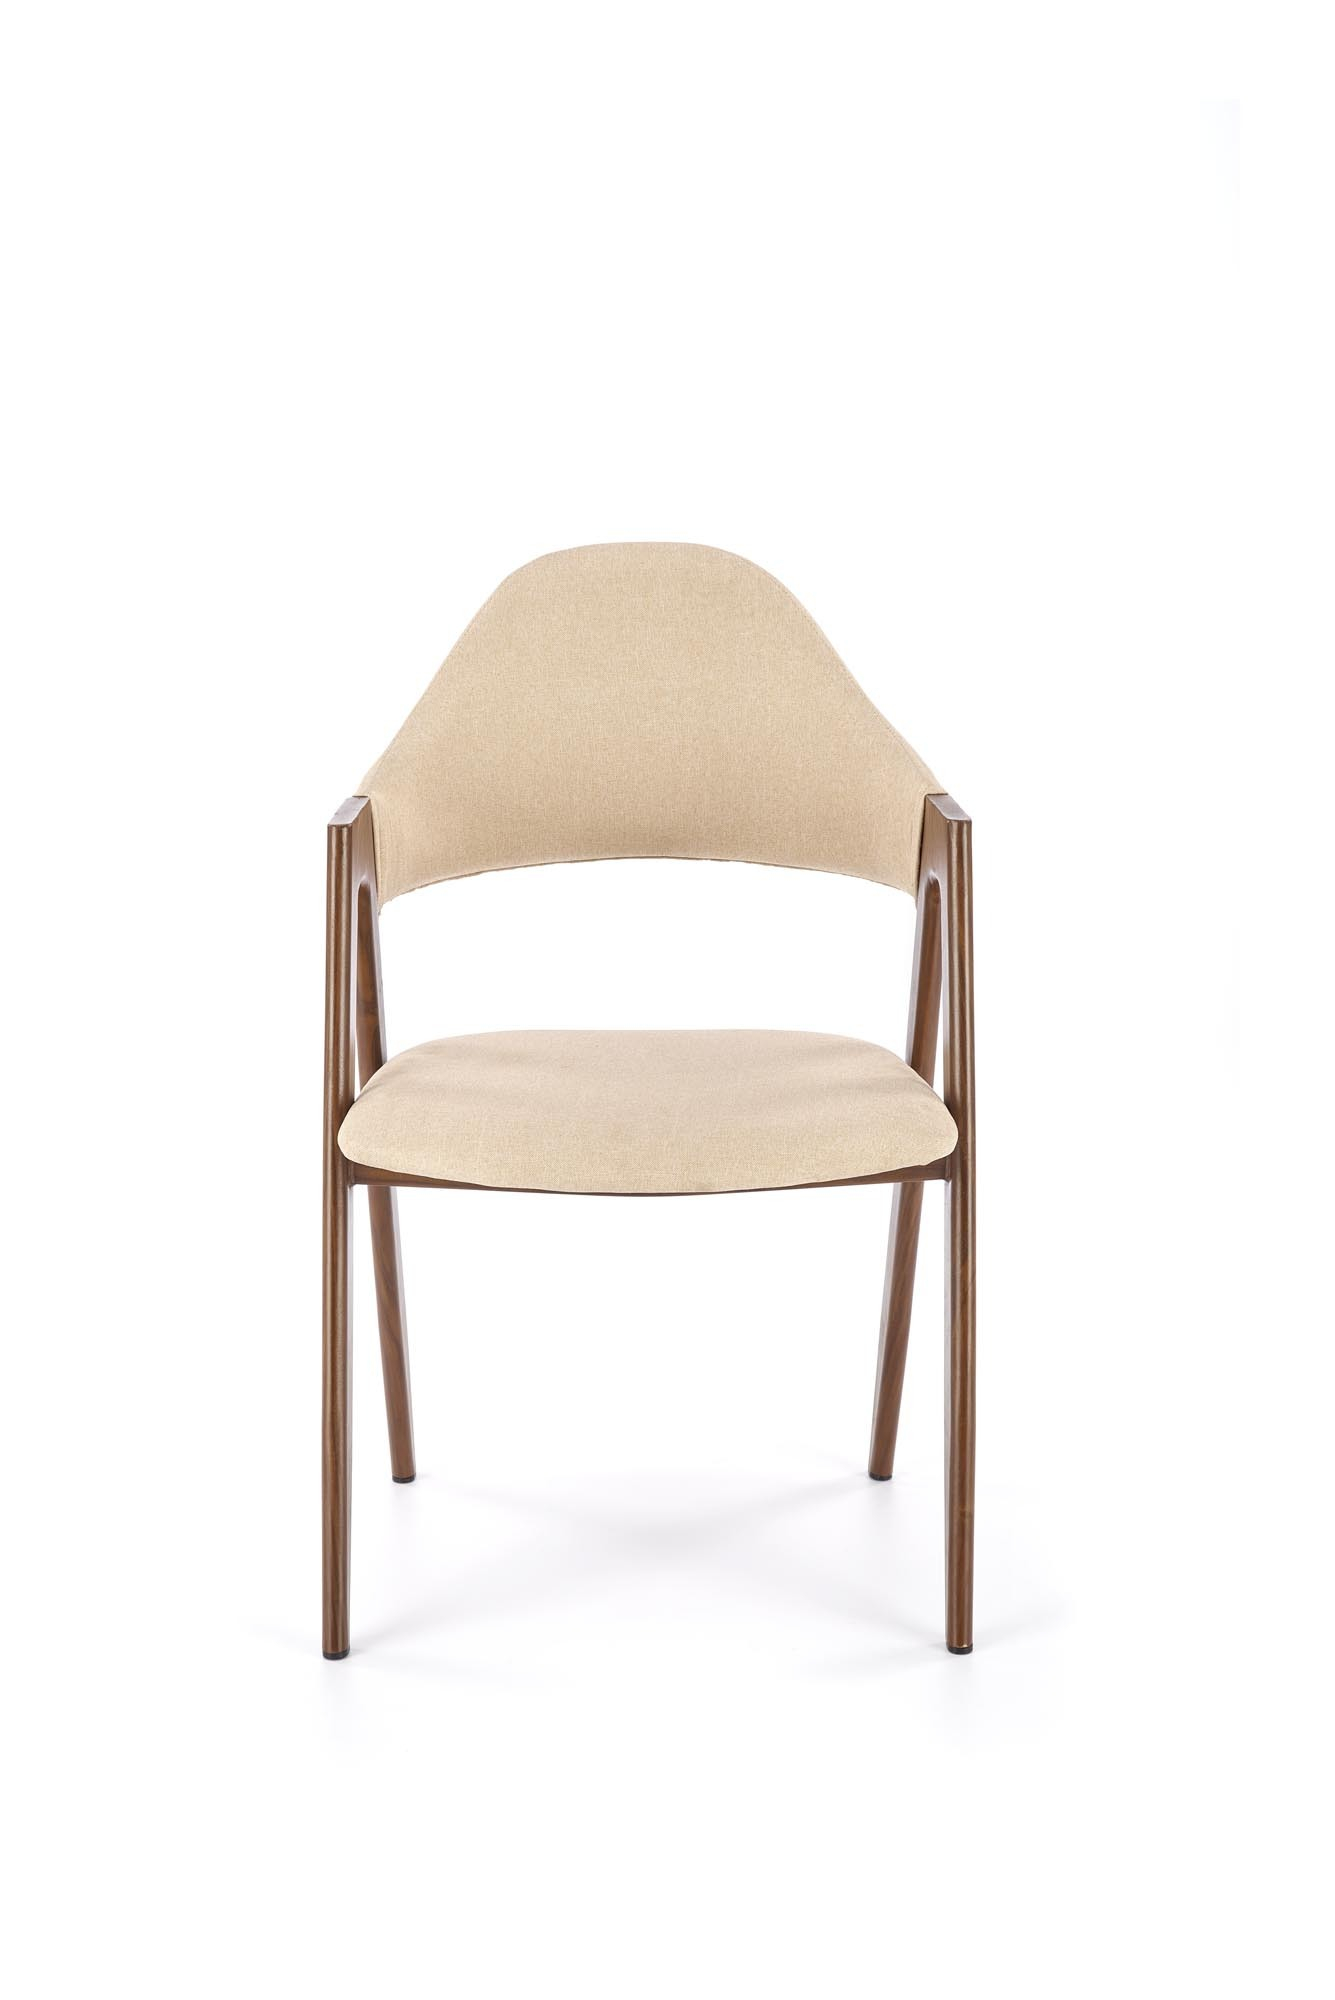 K344 krzesło beżowe